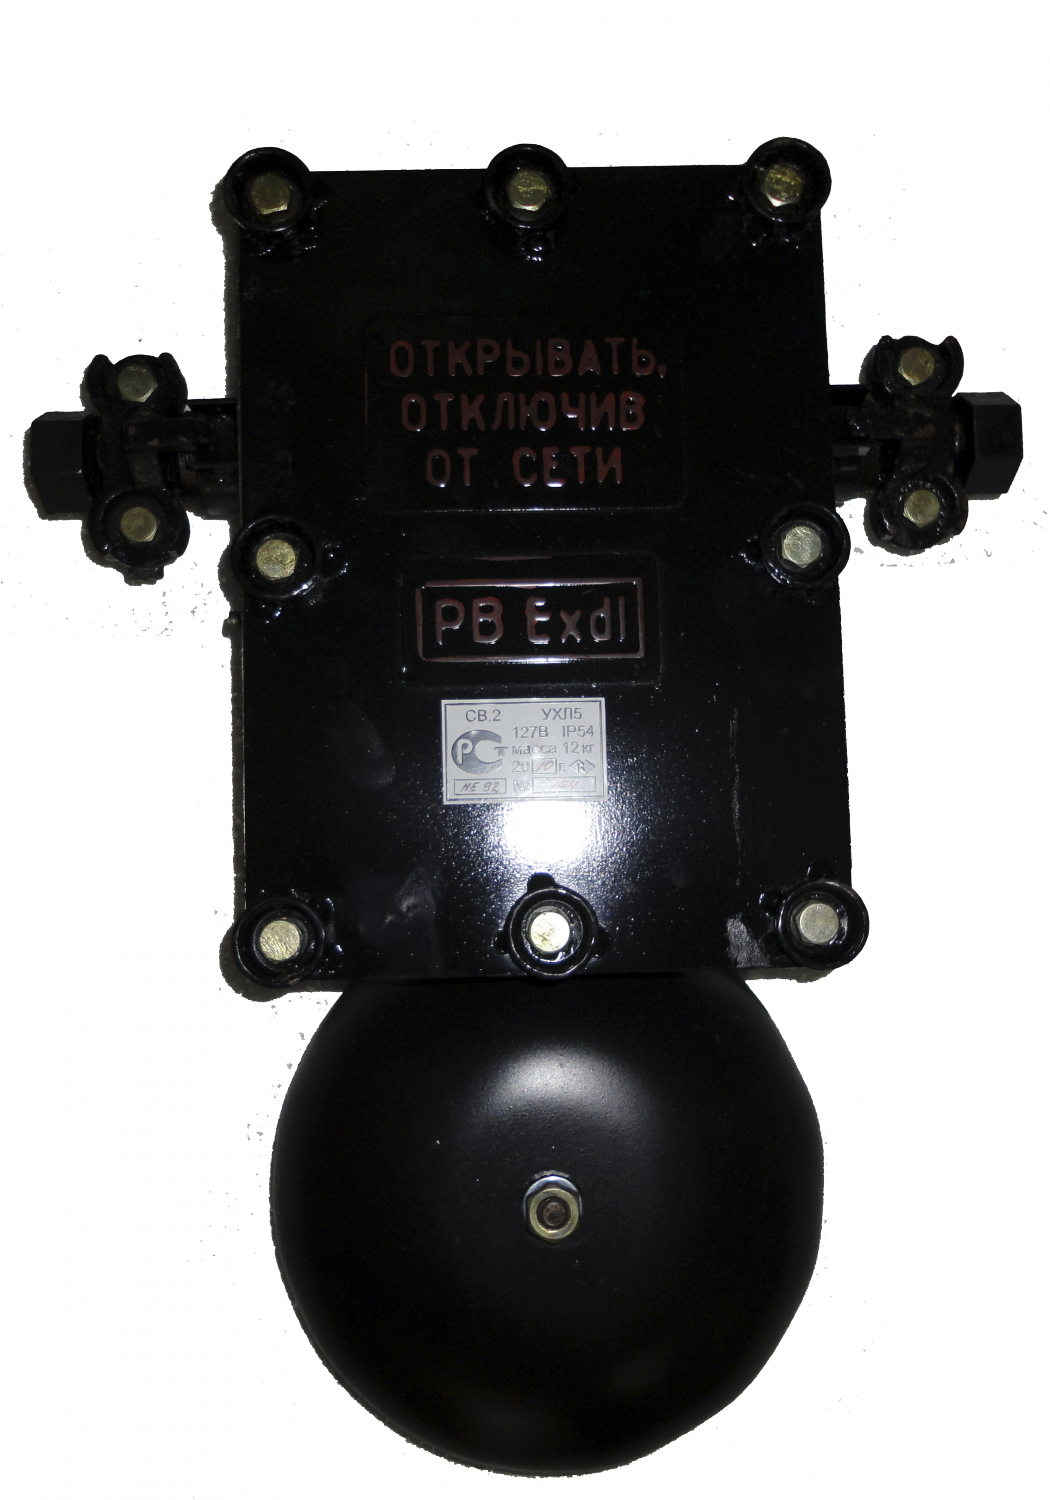 Сигнализатор звуковой взрывобезопасный СВ-2